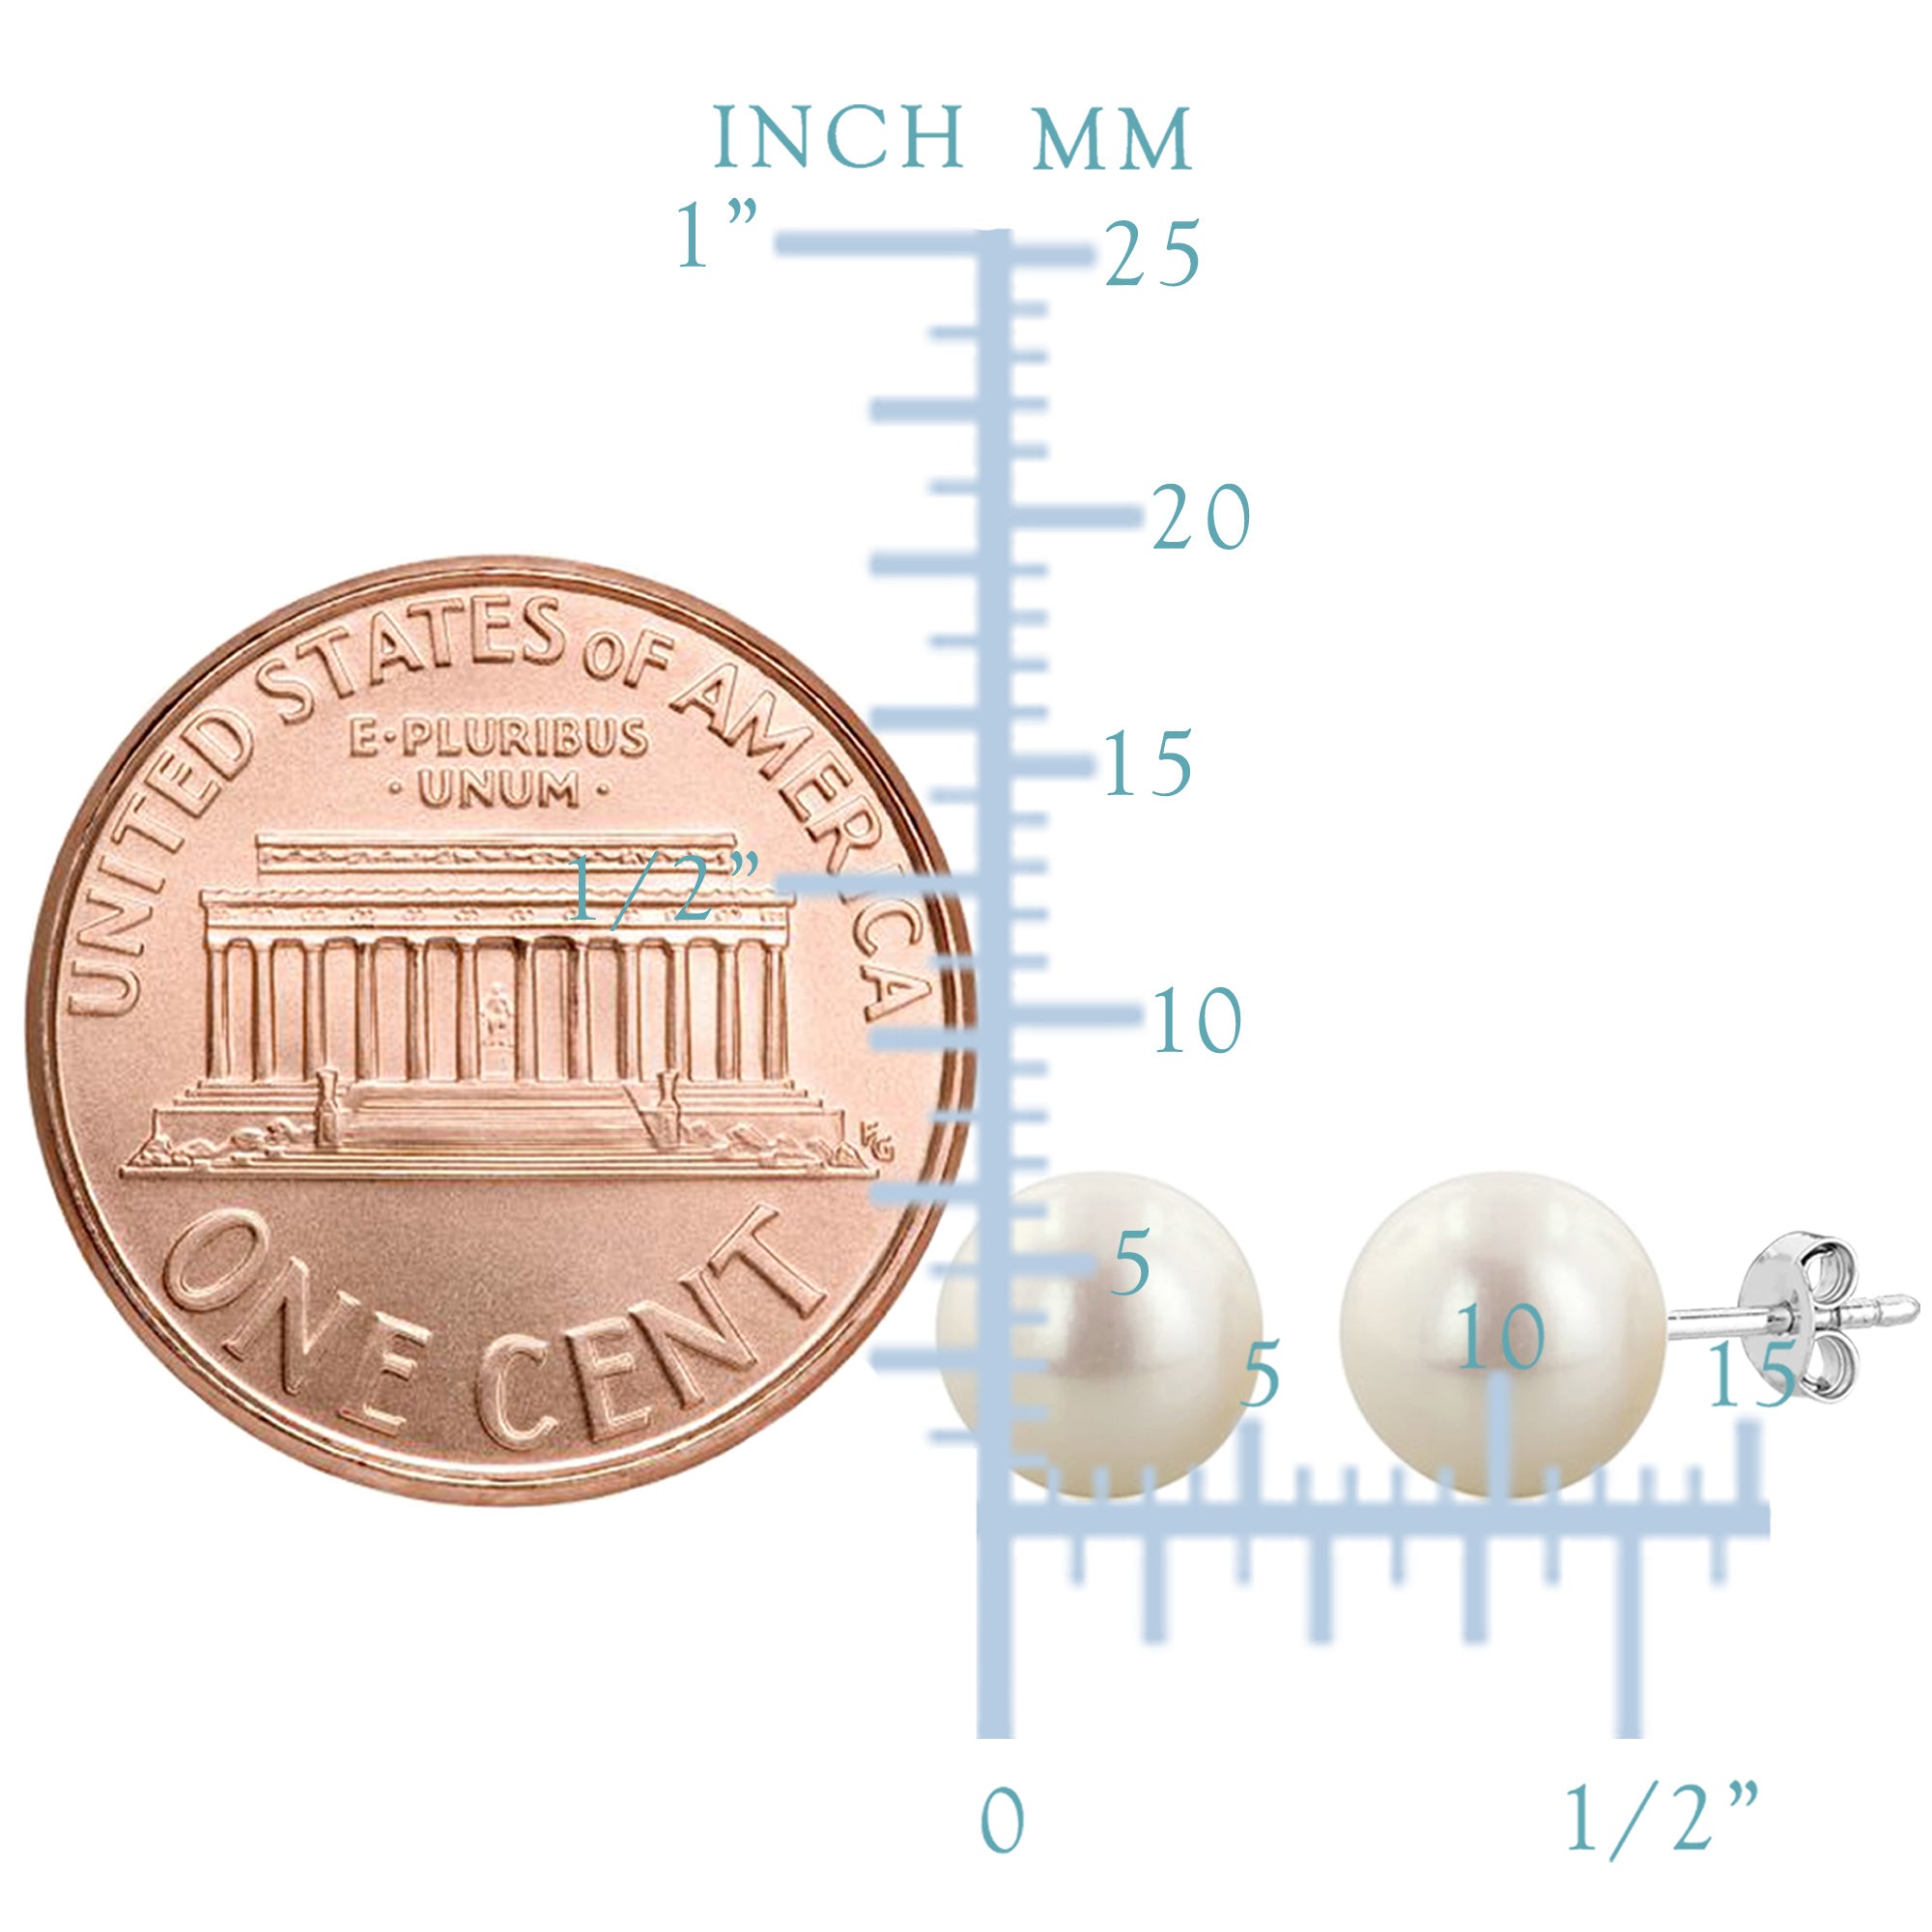 Orecchini a bottone con perle d'acqua dolce bianche da 4 mm in argento sterling con finitura rodiata, gioielli di design per uomini e donne